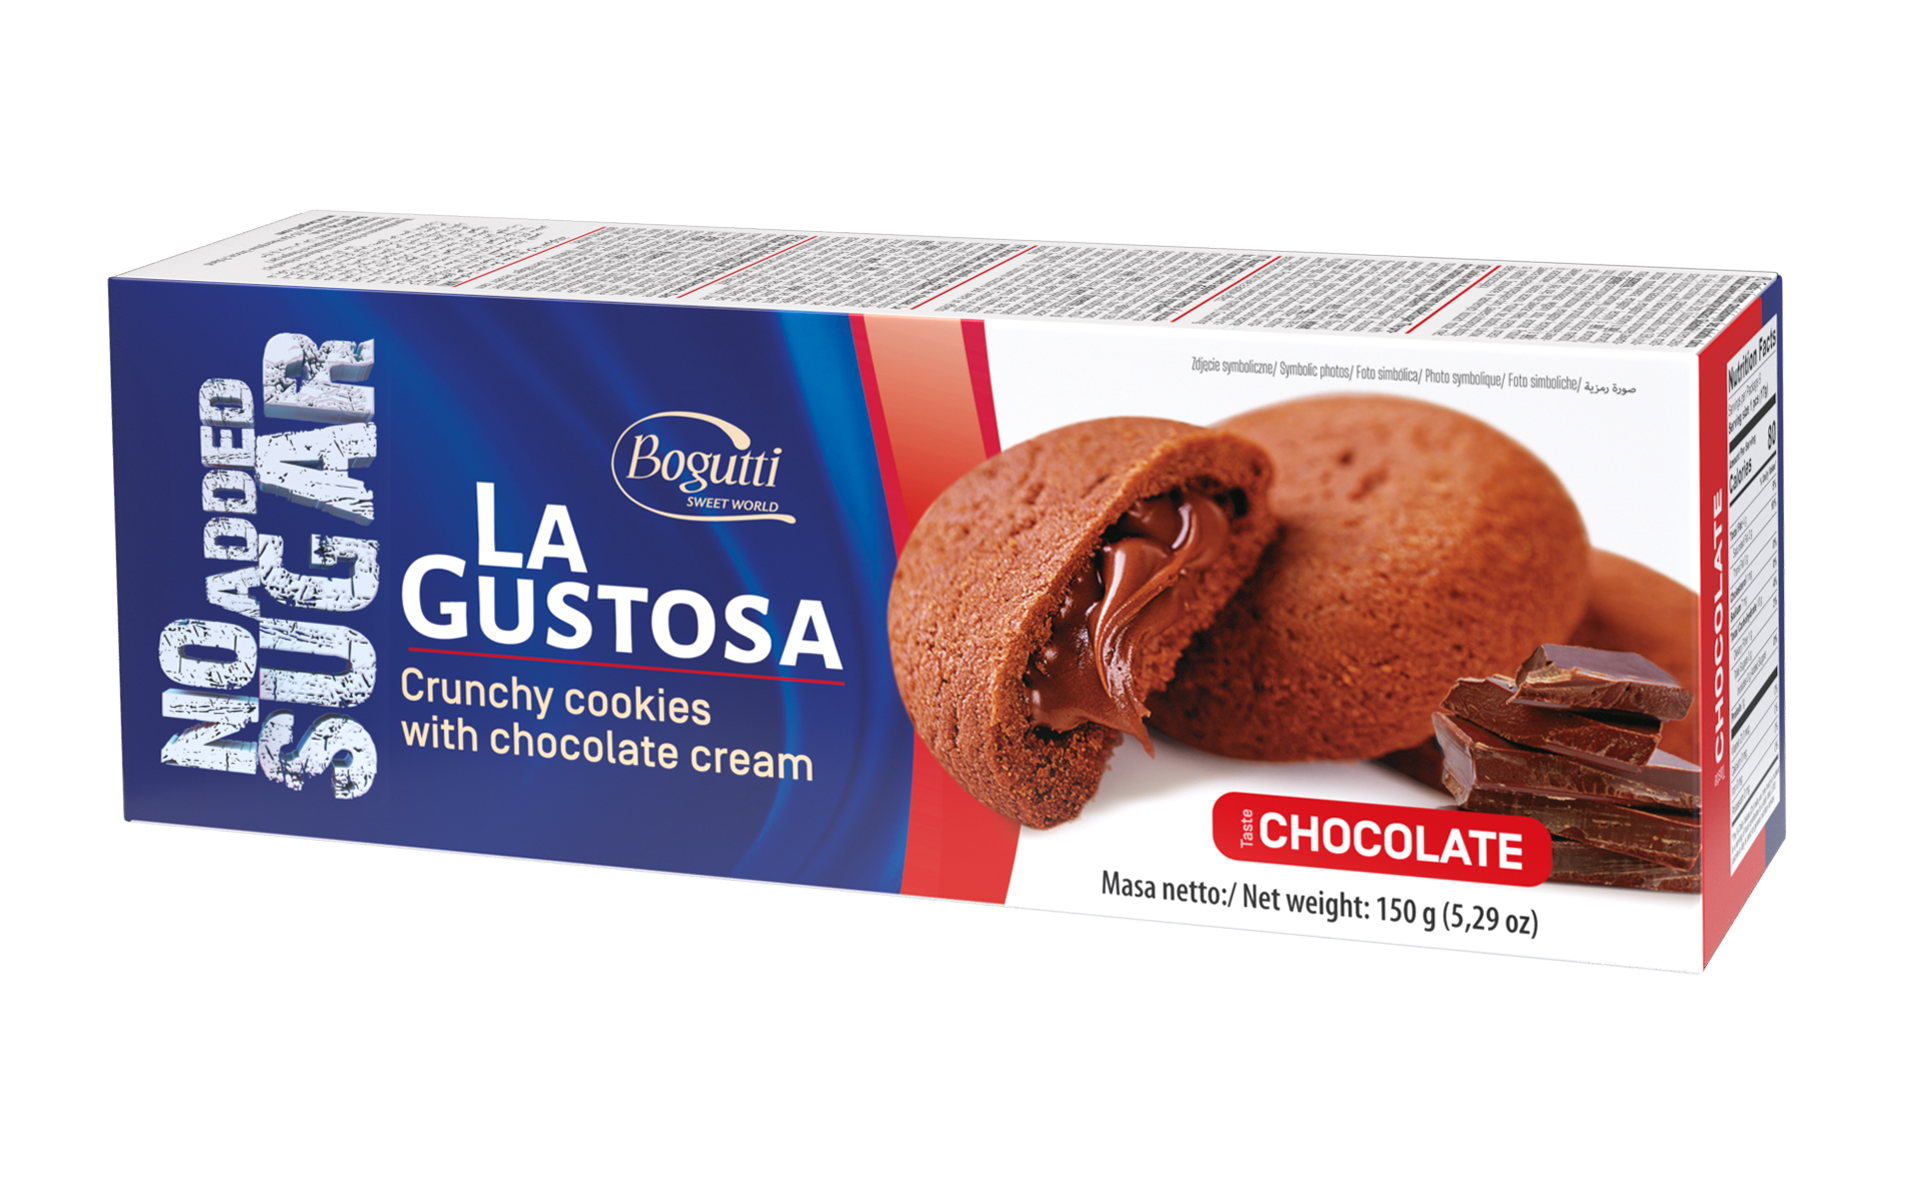 La Gustosa – Kruche ciastka z kremem czekoladowym bez dodatku cukru